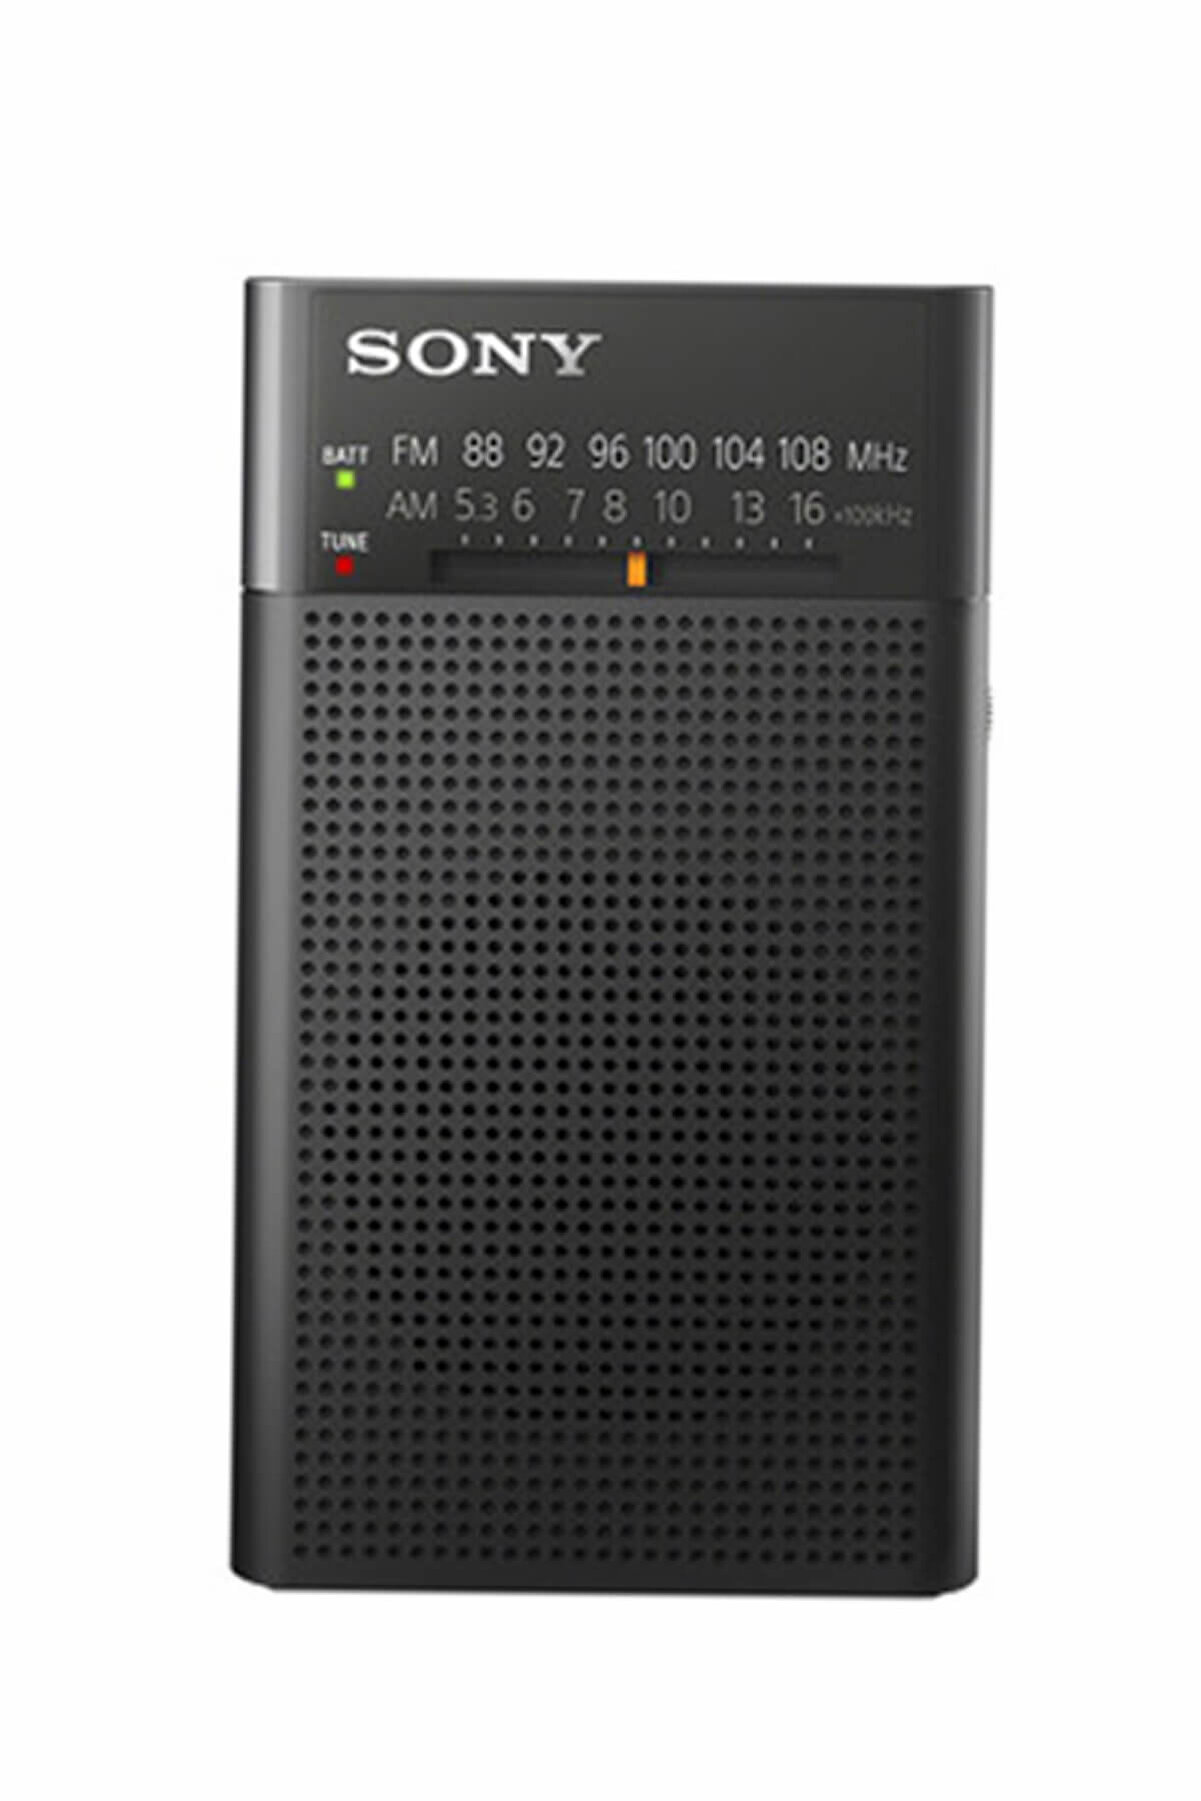 Sony ICF-P26 Hoparlörlü Taşınabilir Radyo